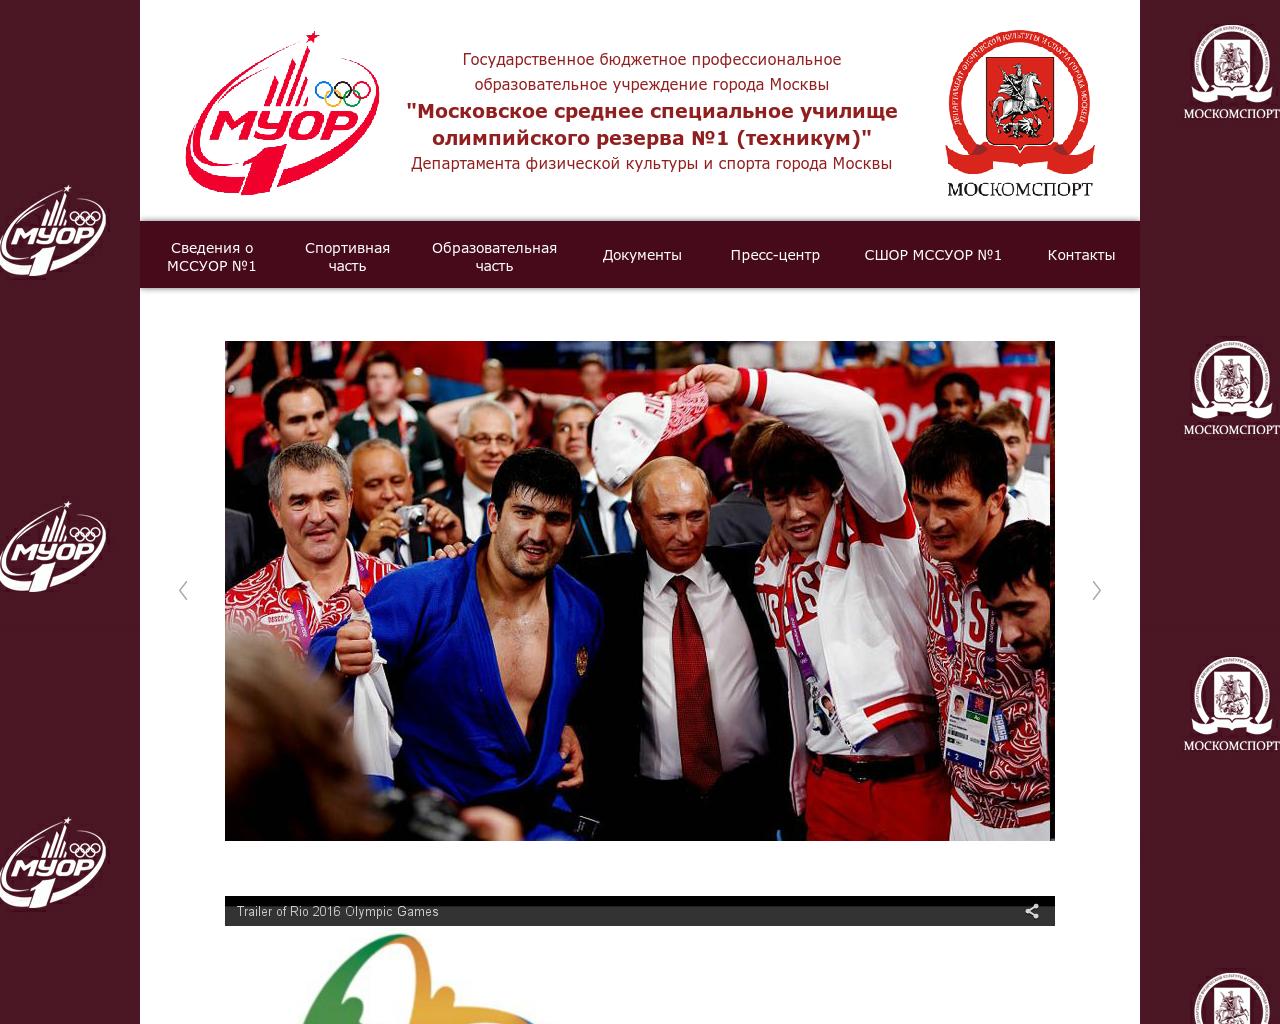 Изображение сайта uor1.ru в разрешении 1280x1024